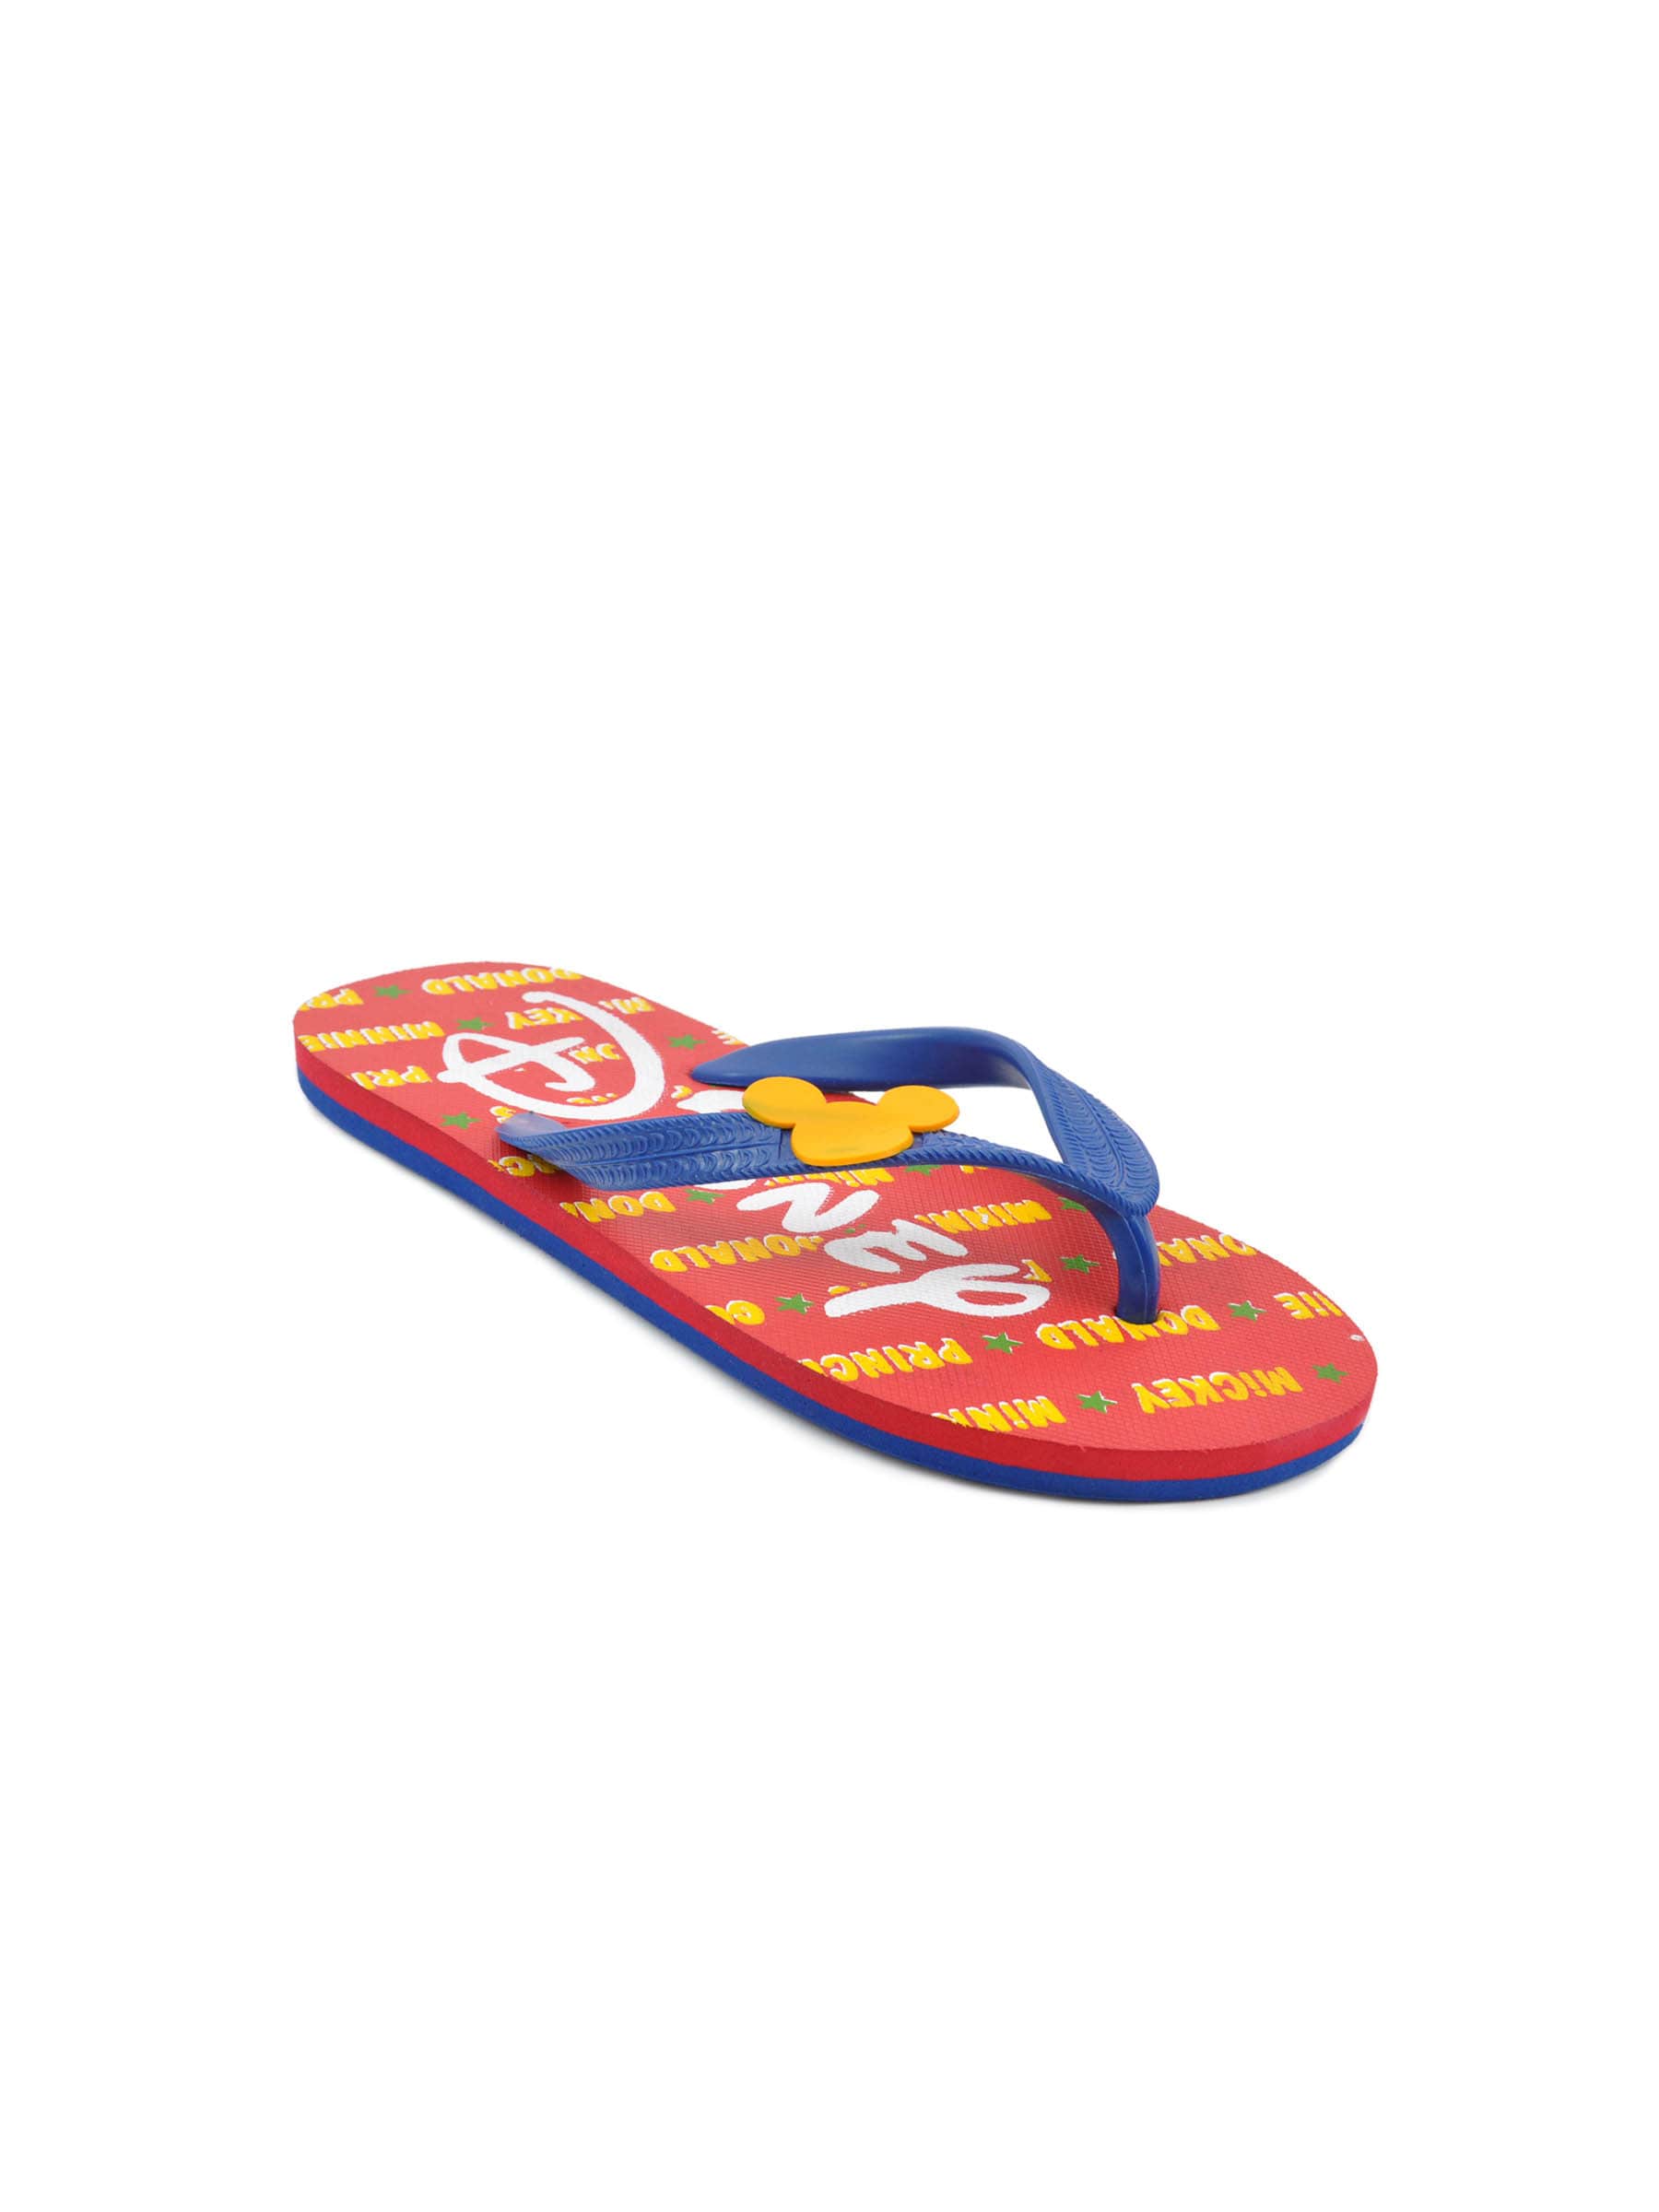 Disney Unisex Kids Basic Red Flip Flops